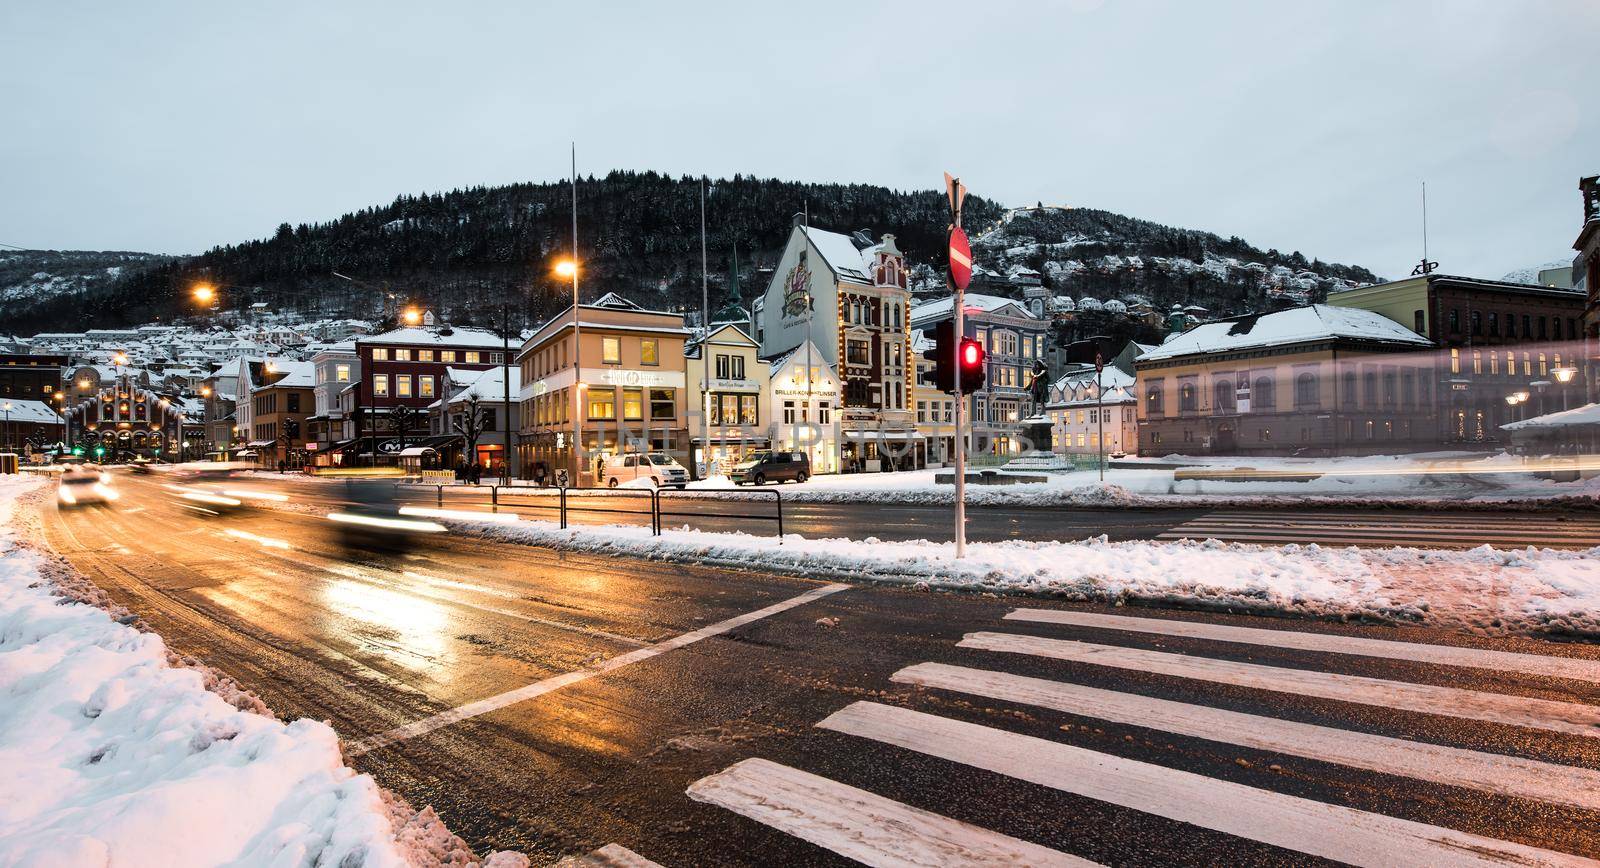 Bergen at Christmas by GekaSkr